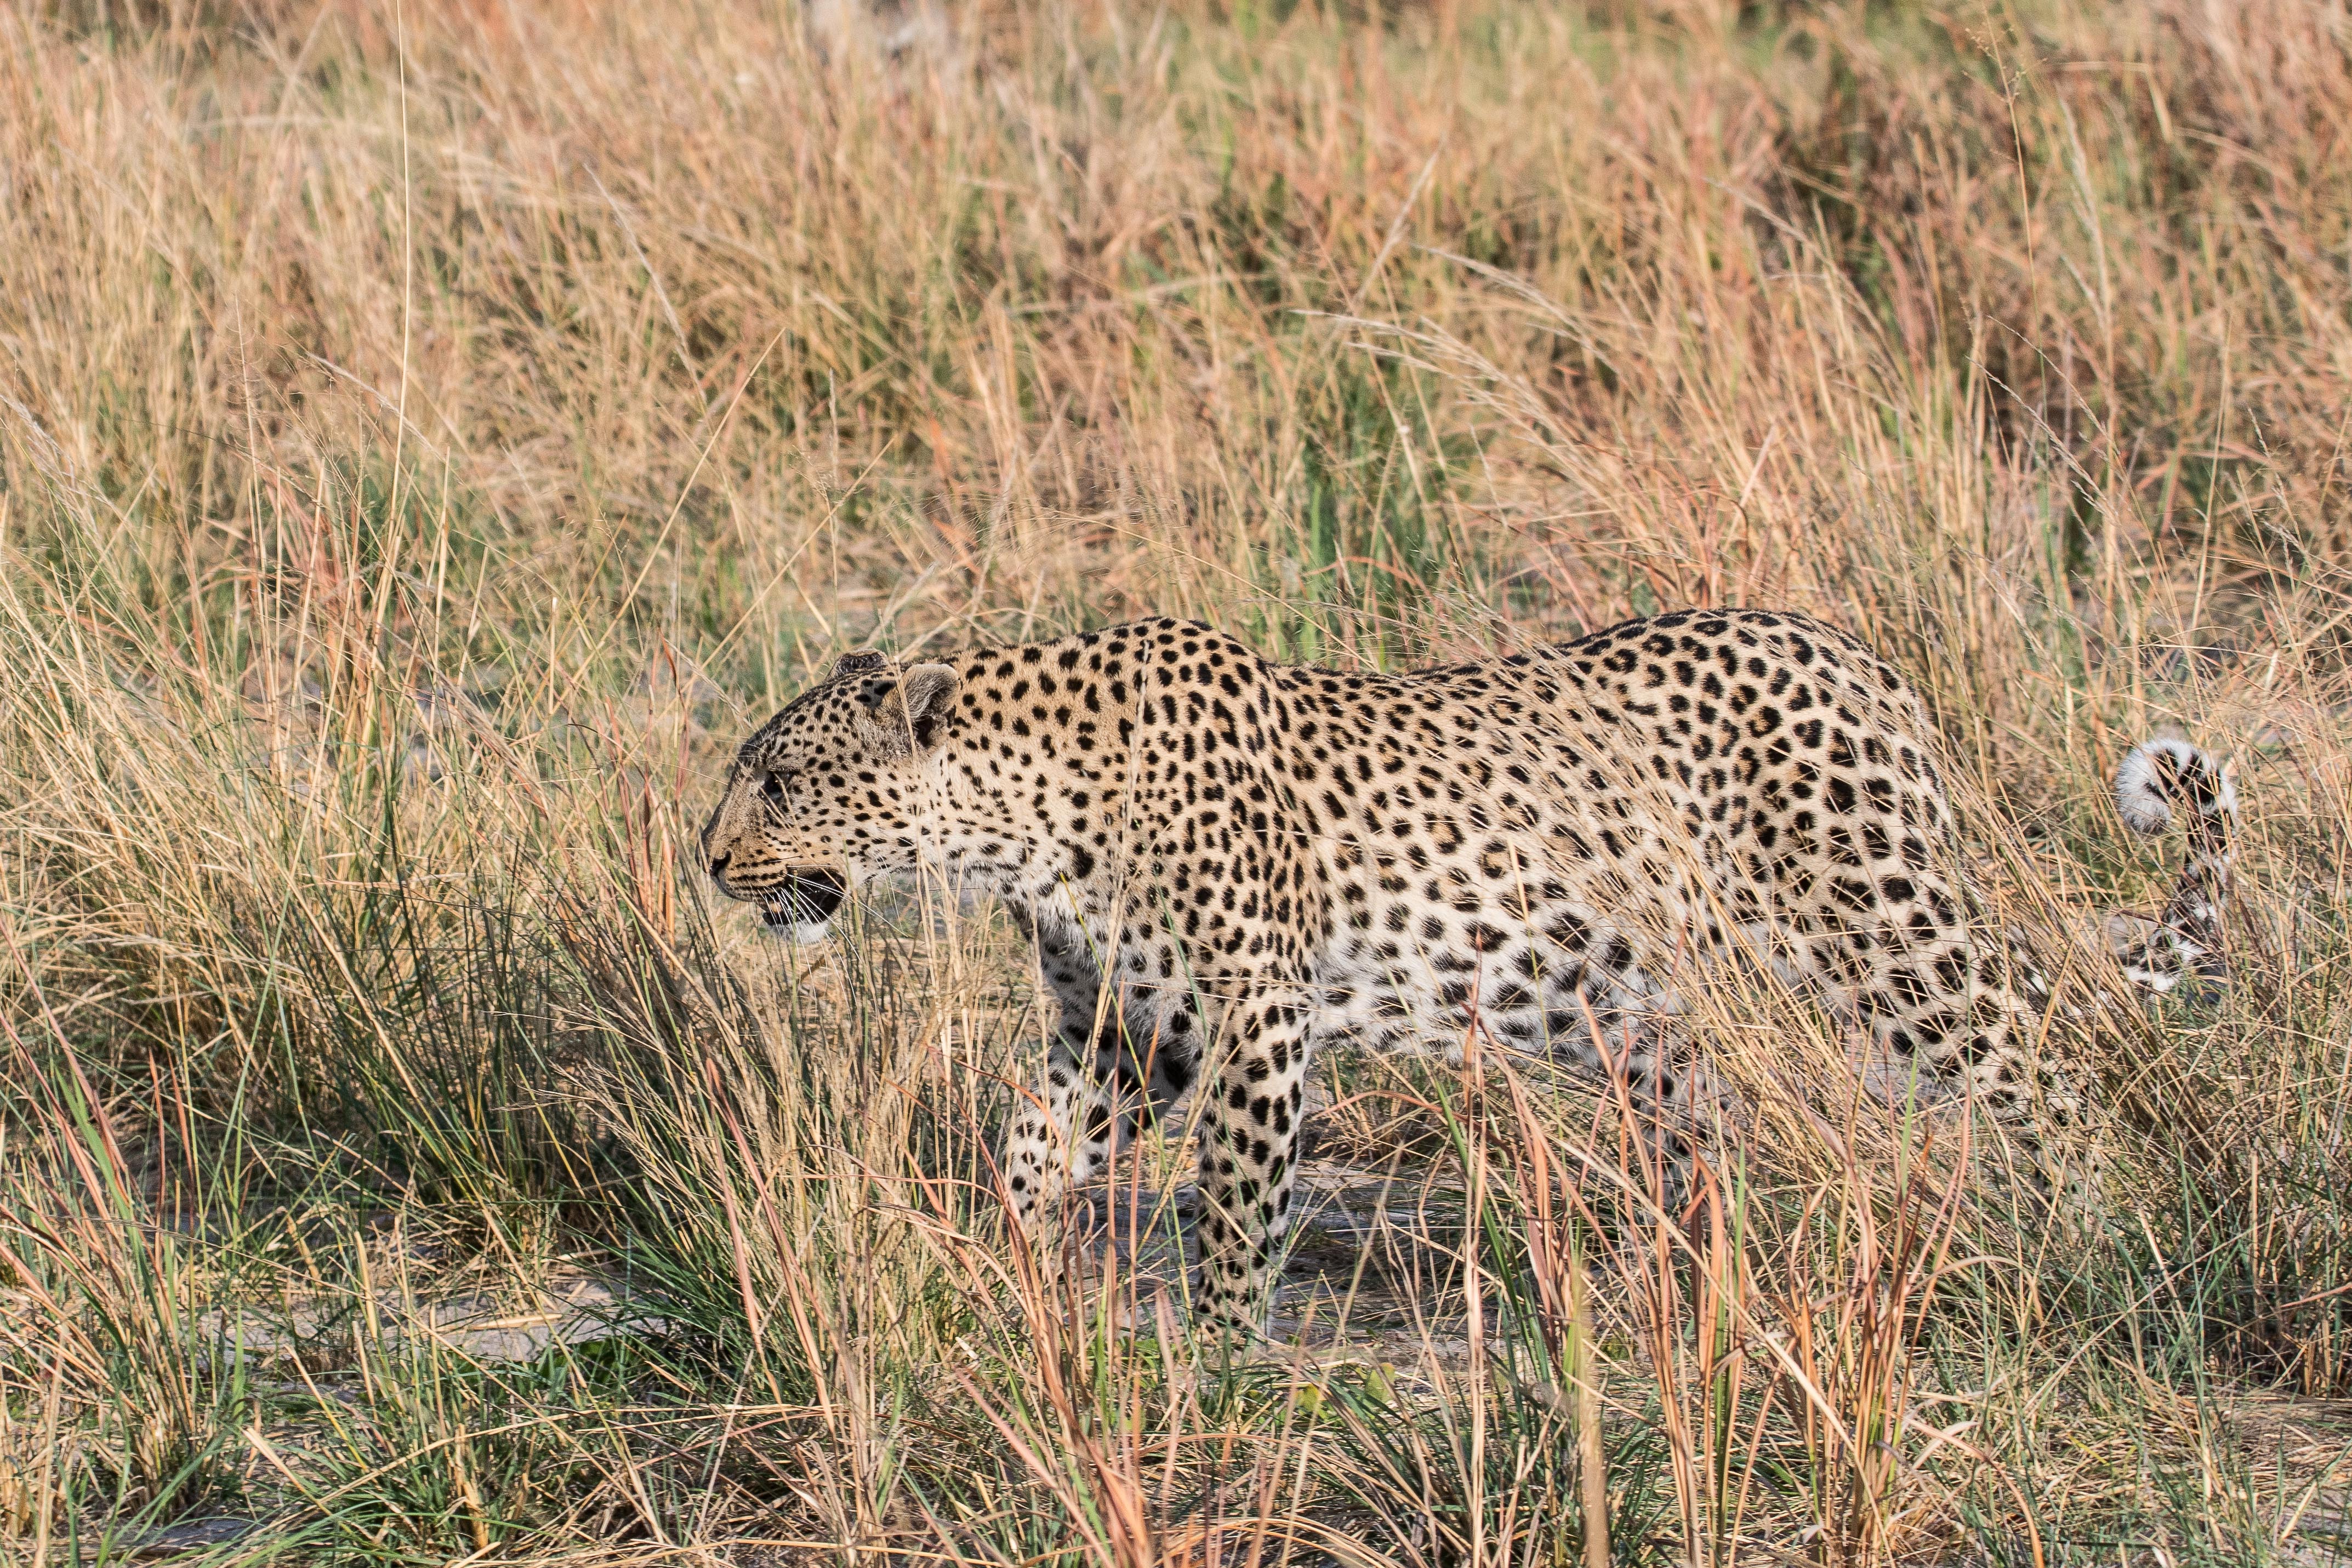 Léopard (Leopard, Panthera pardus), femelle d'environ 4 ans déambulant dans une brousse sèche, Shinde, delta de l'Okavango, Botswana.